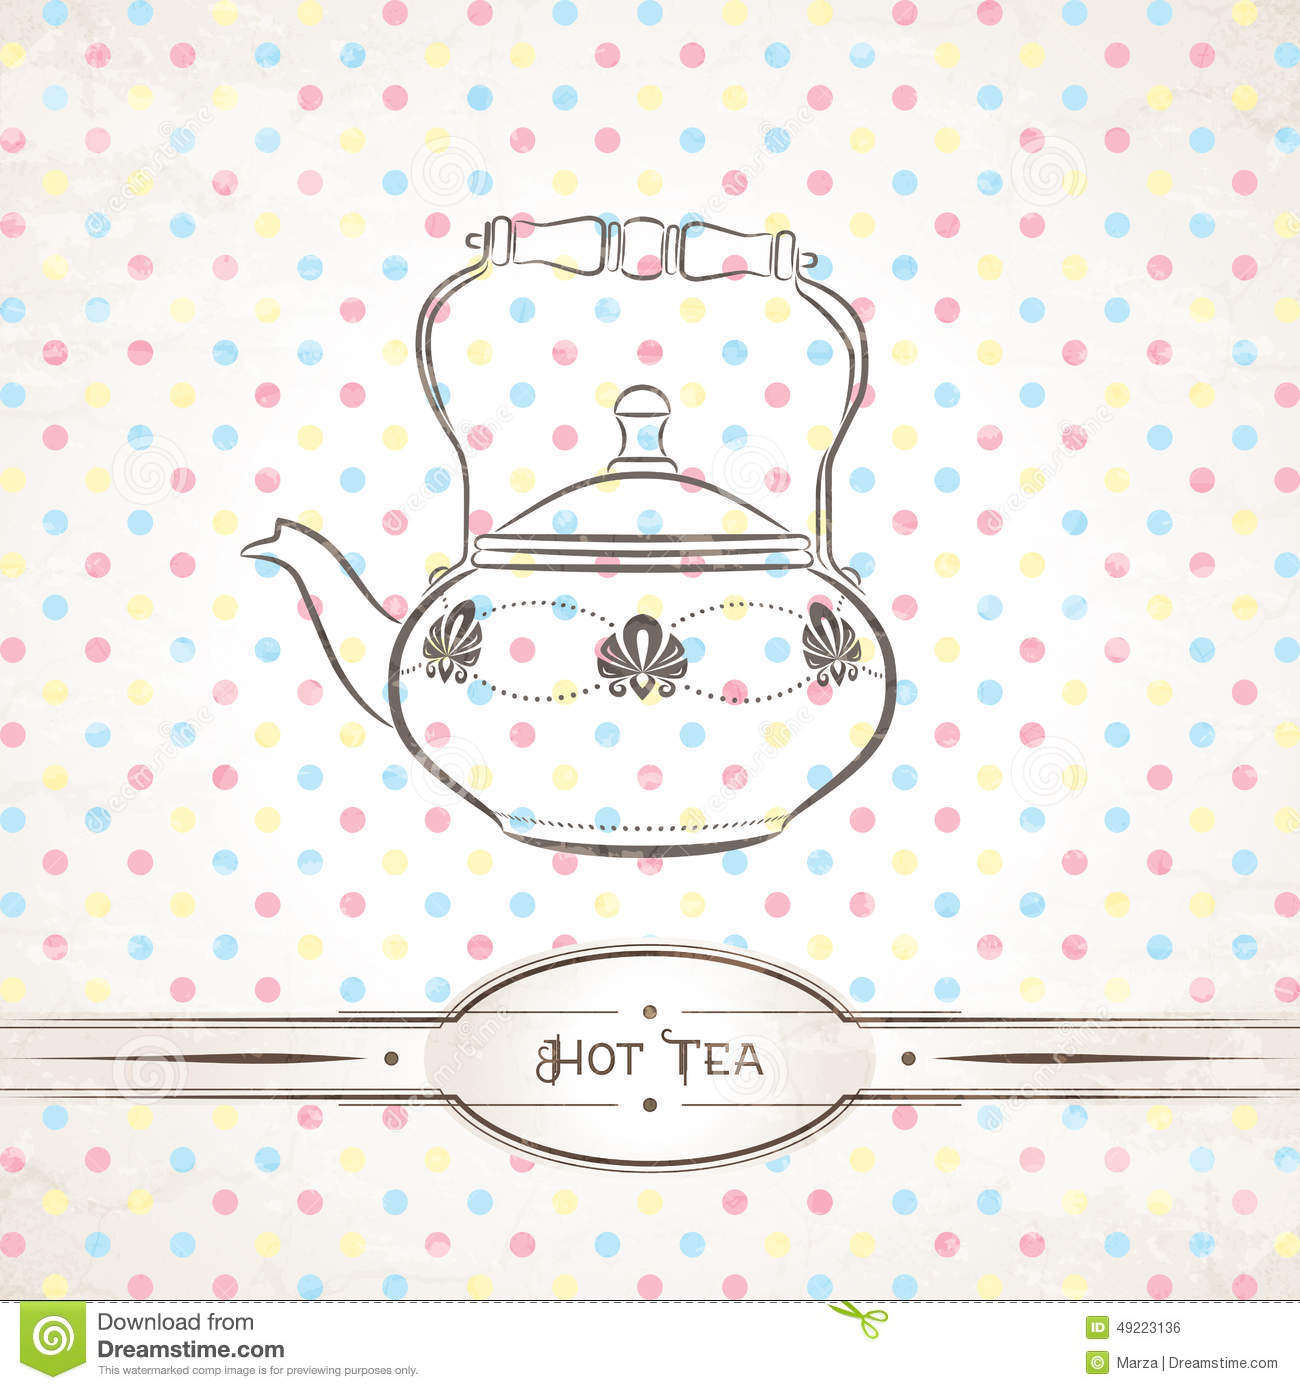 Vector Retro Illustration Of The Teapot Against Polka Dot Background